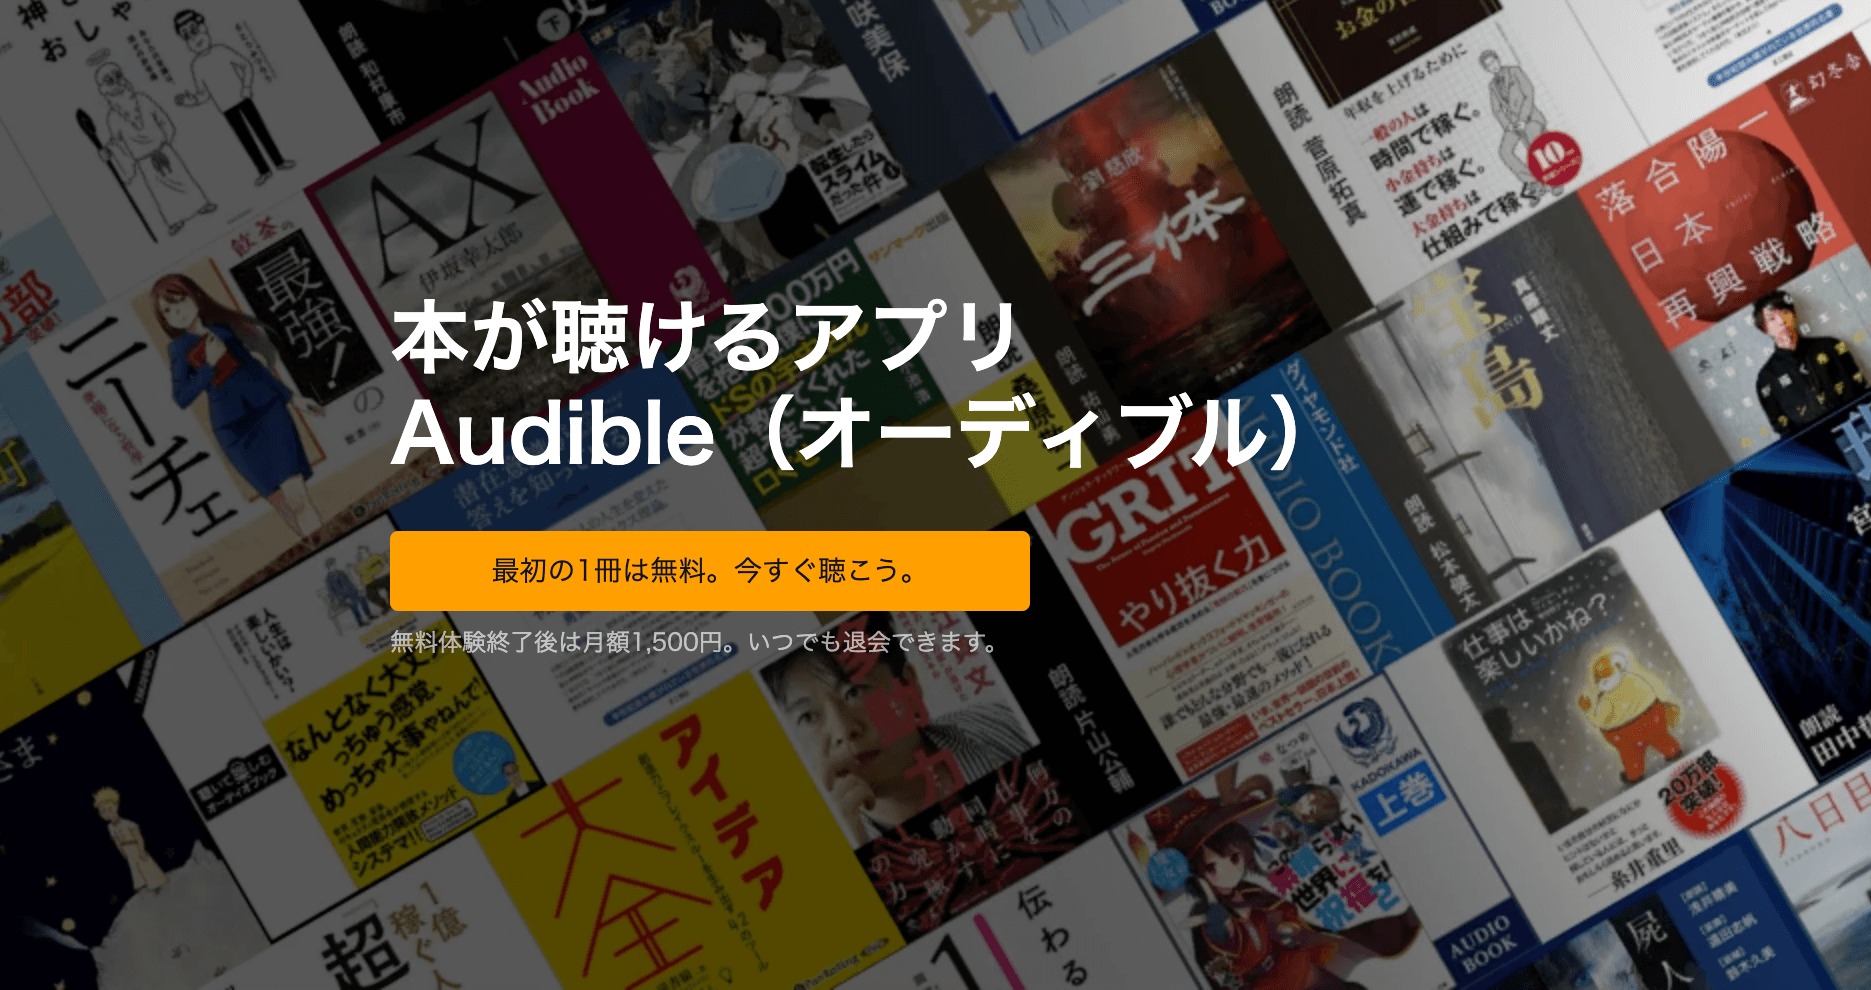 【無料体験あり】「Audible」を使ってみた感想【スマホアプリで超簡単!】